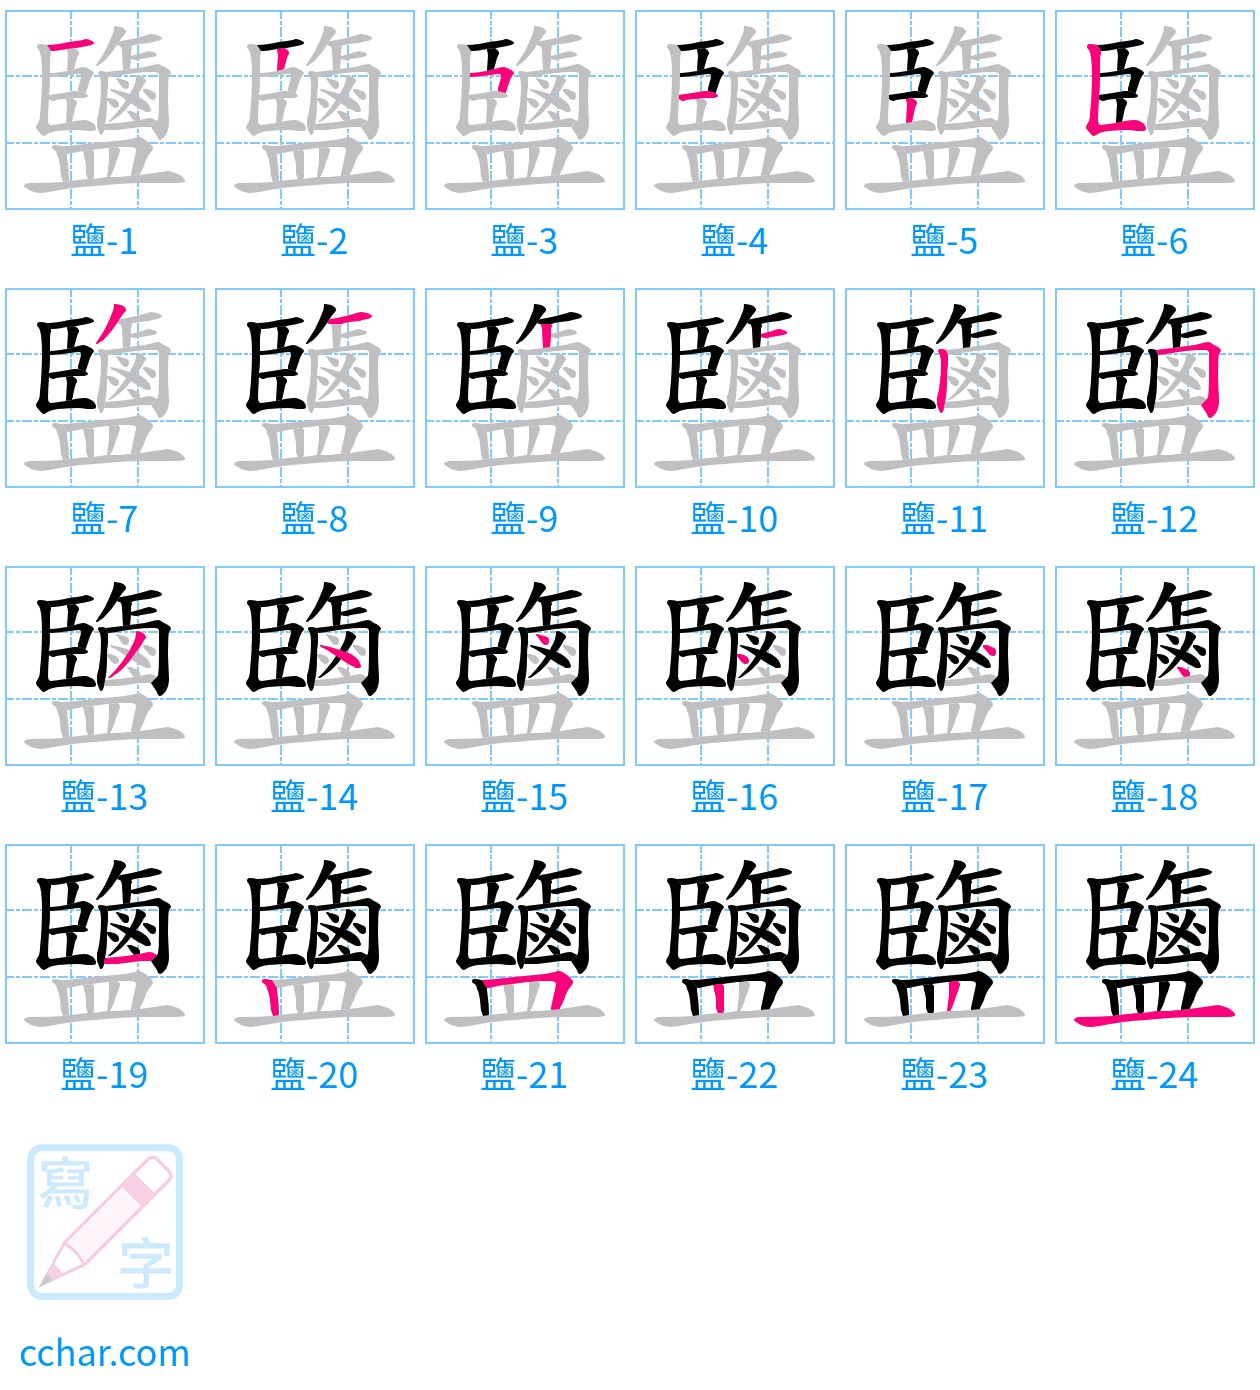 鹽 stroke order step-by-step diagram